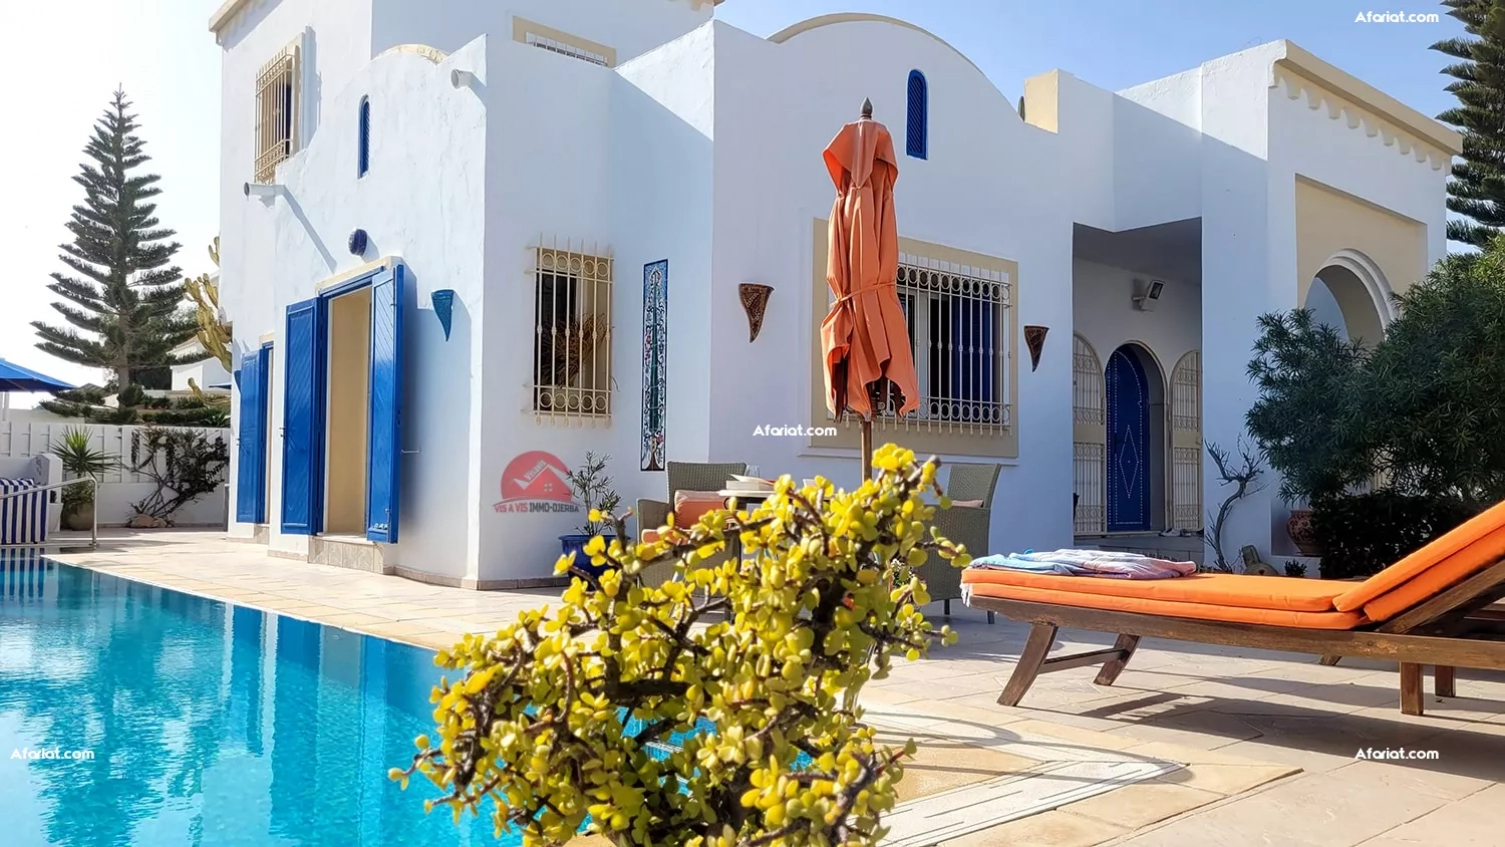 A vendre en zone touristique belle villa avec piscine – réf v623